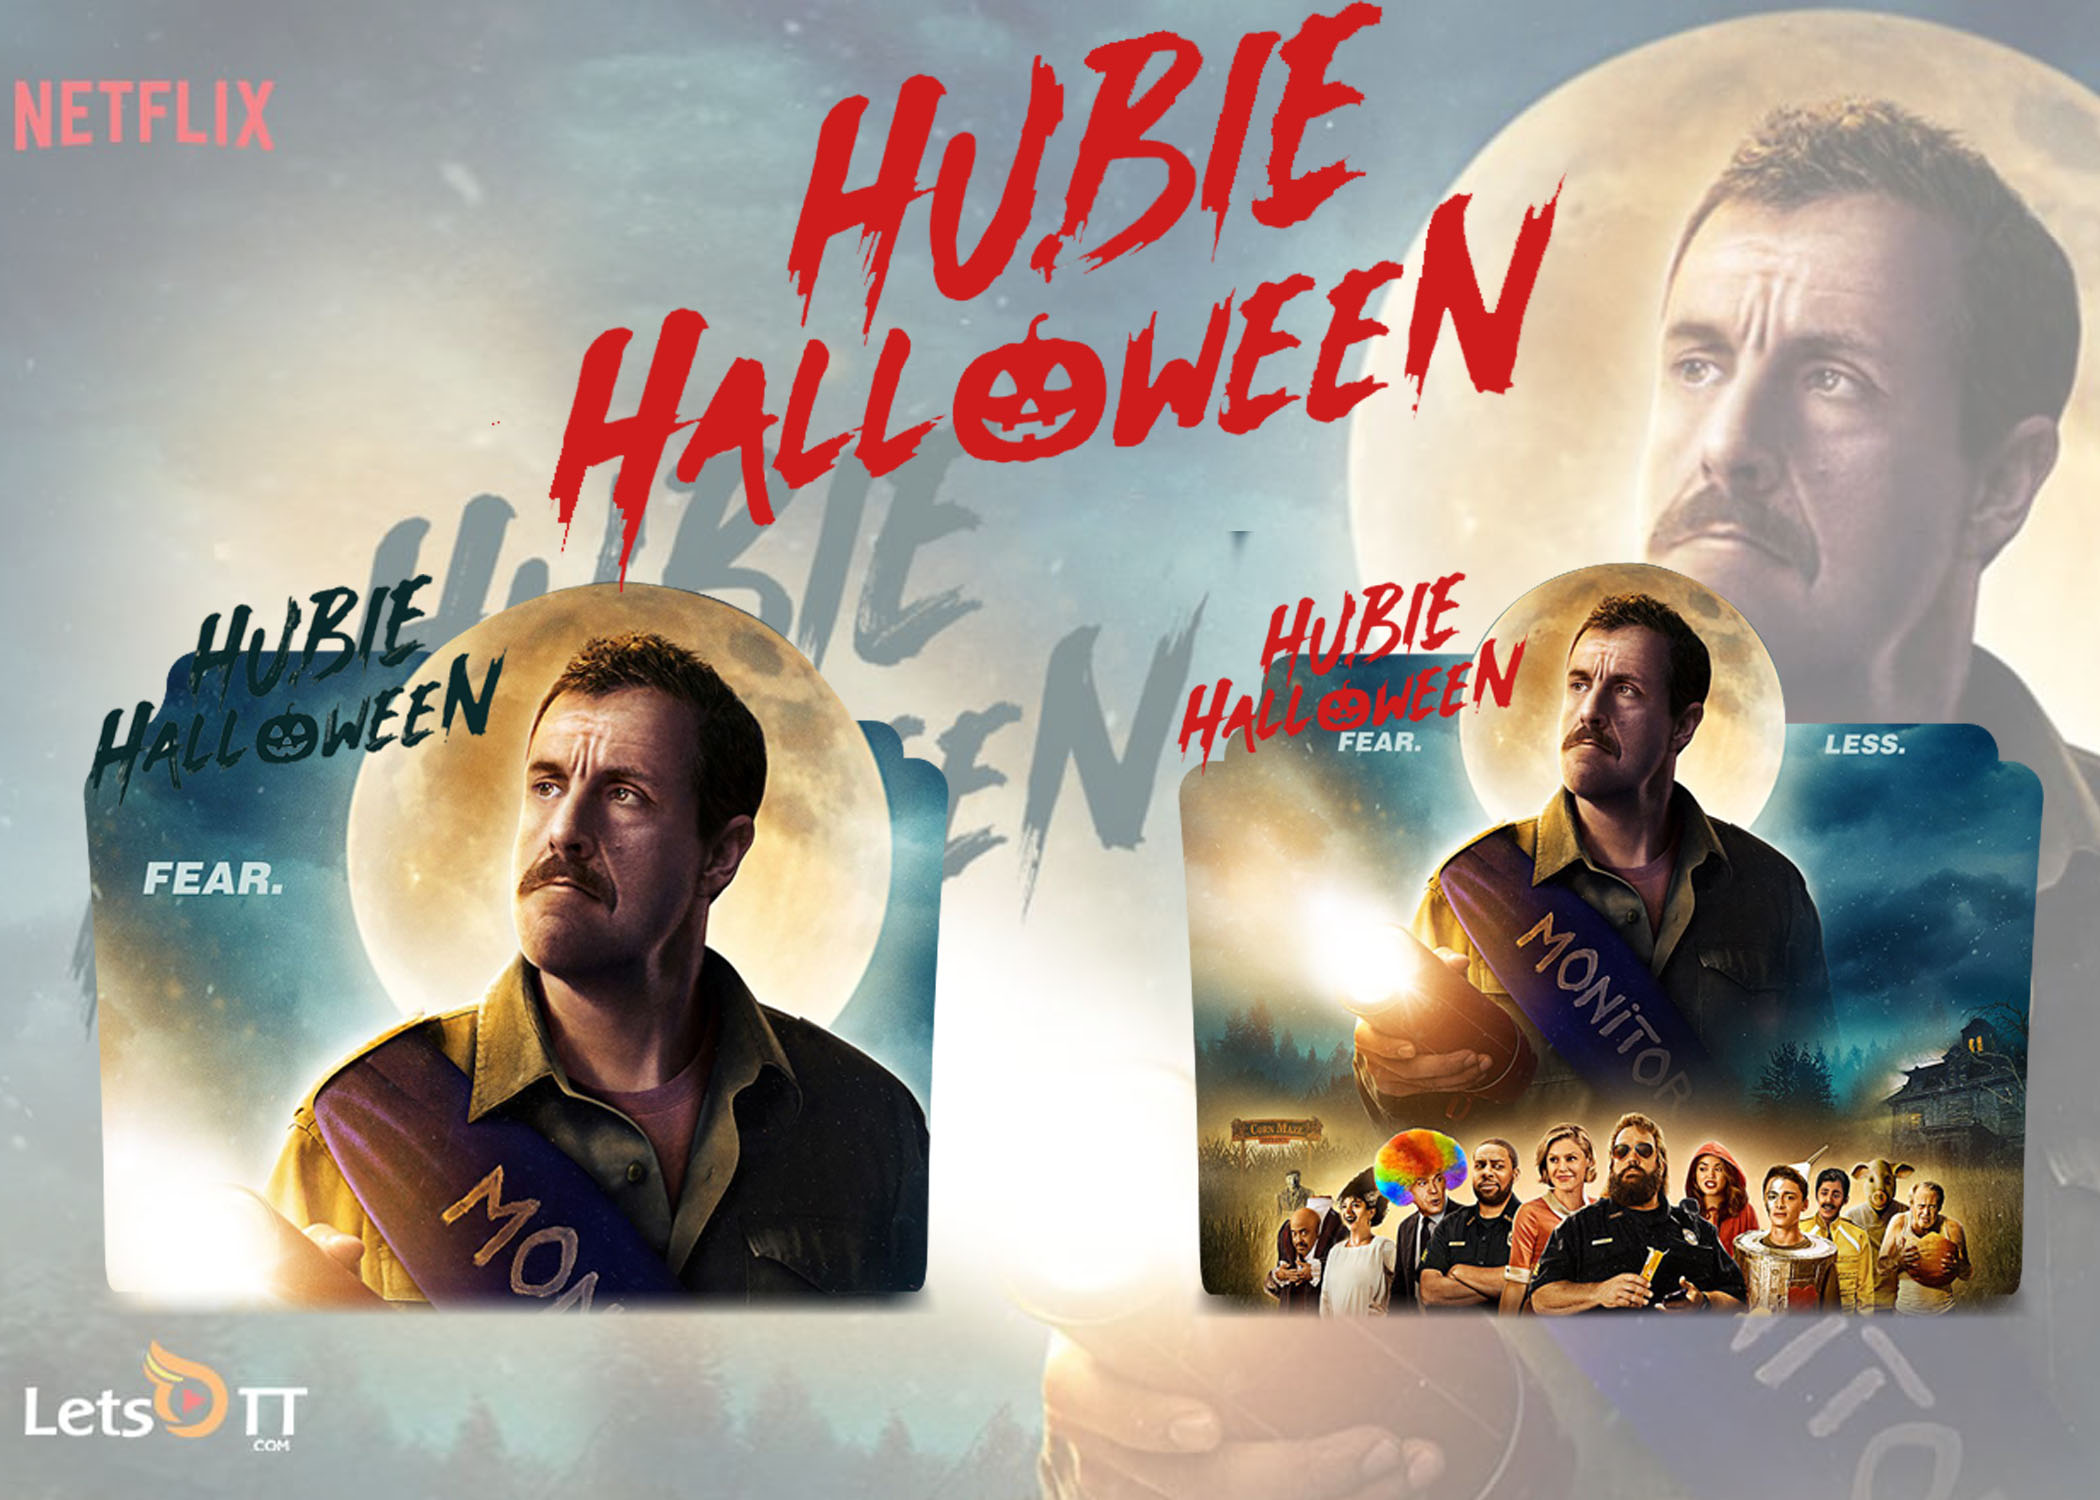 O Halloween do Hubie (2020)